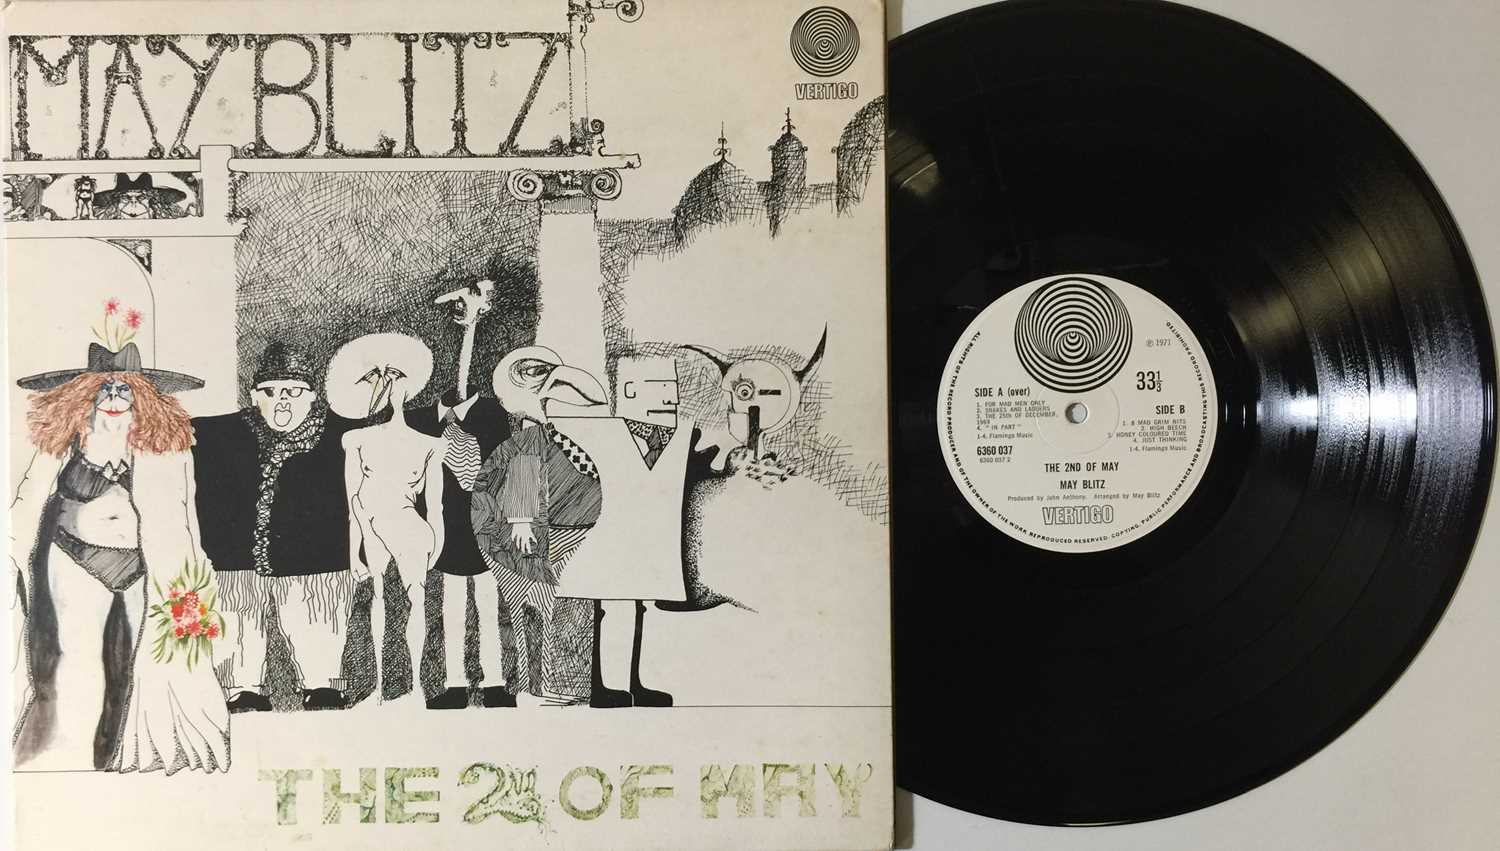 Lot 19 - MAY BLITZ - THE 2ND OF MAY LP (UK VERTIGO SWIRL - 6360 037)